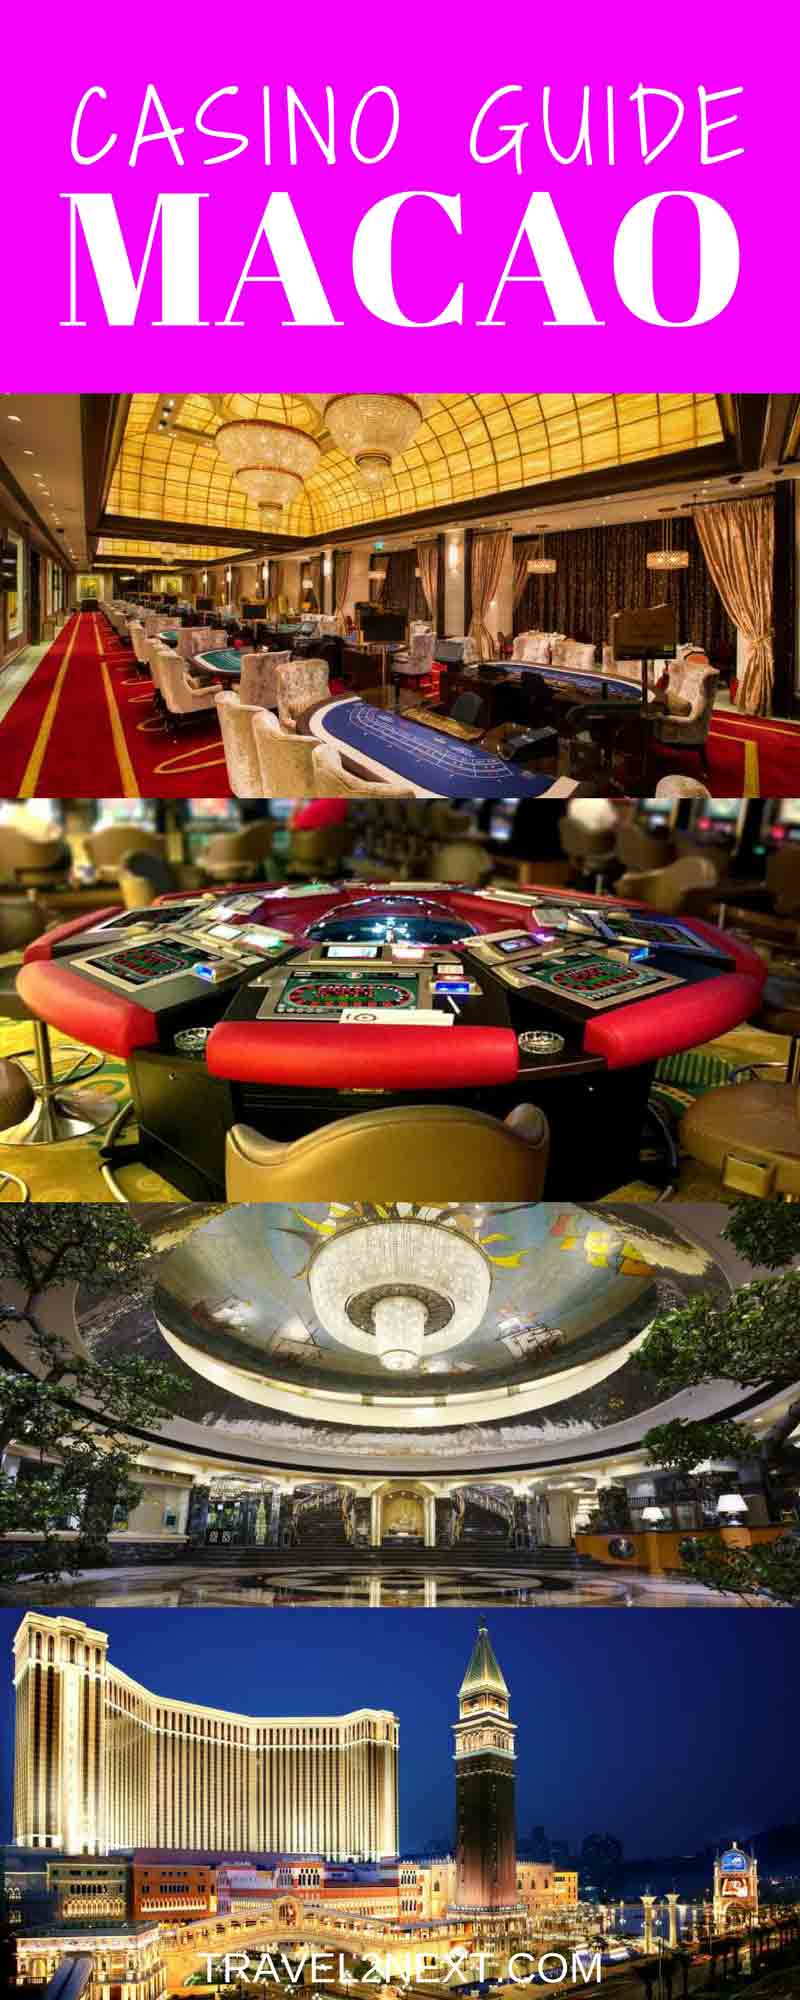 Macau casino guide